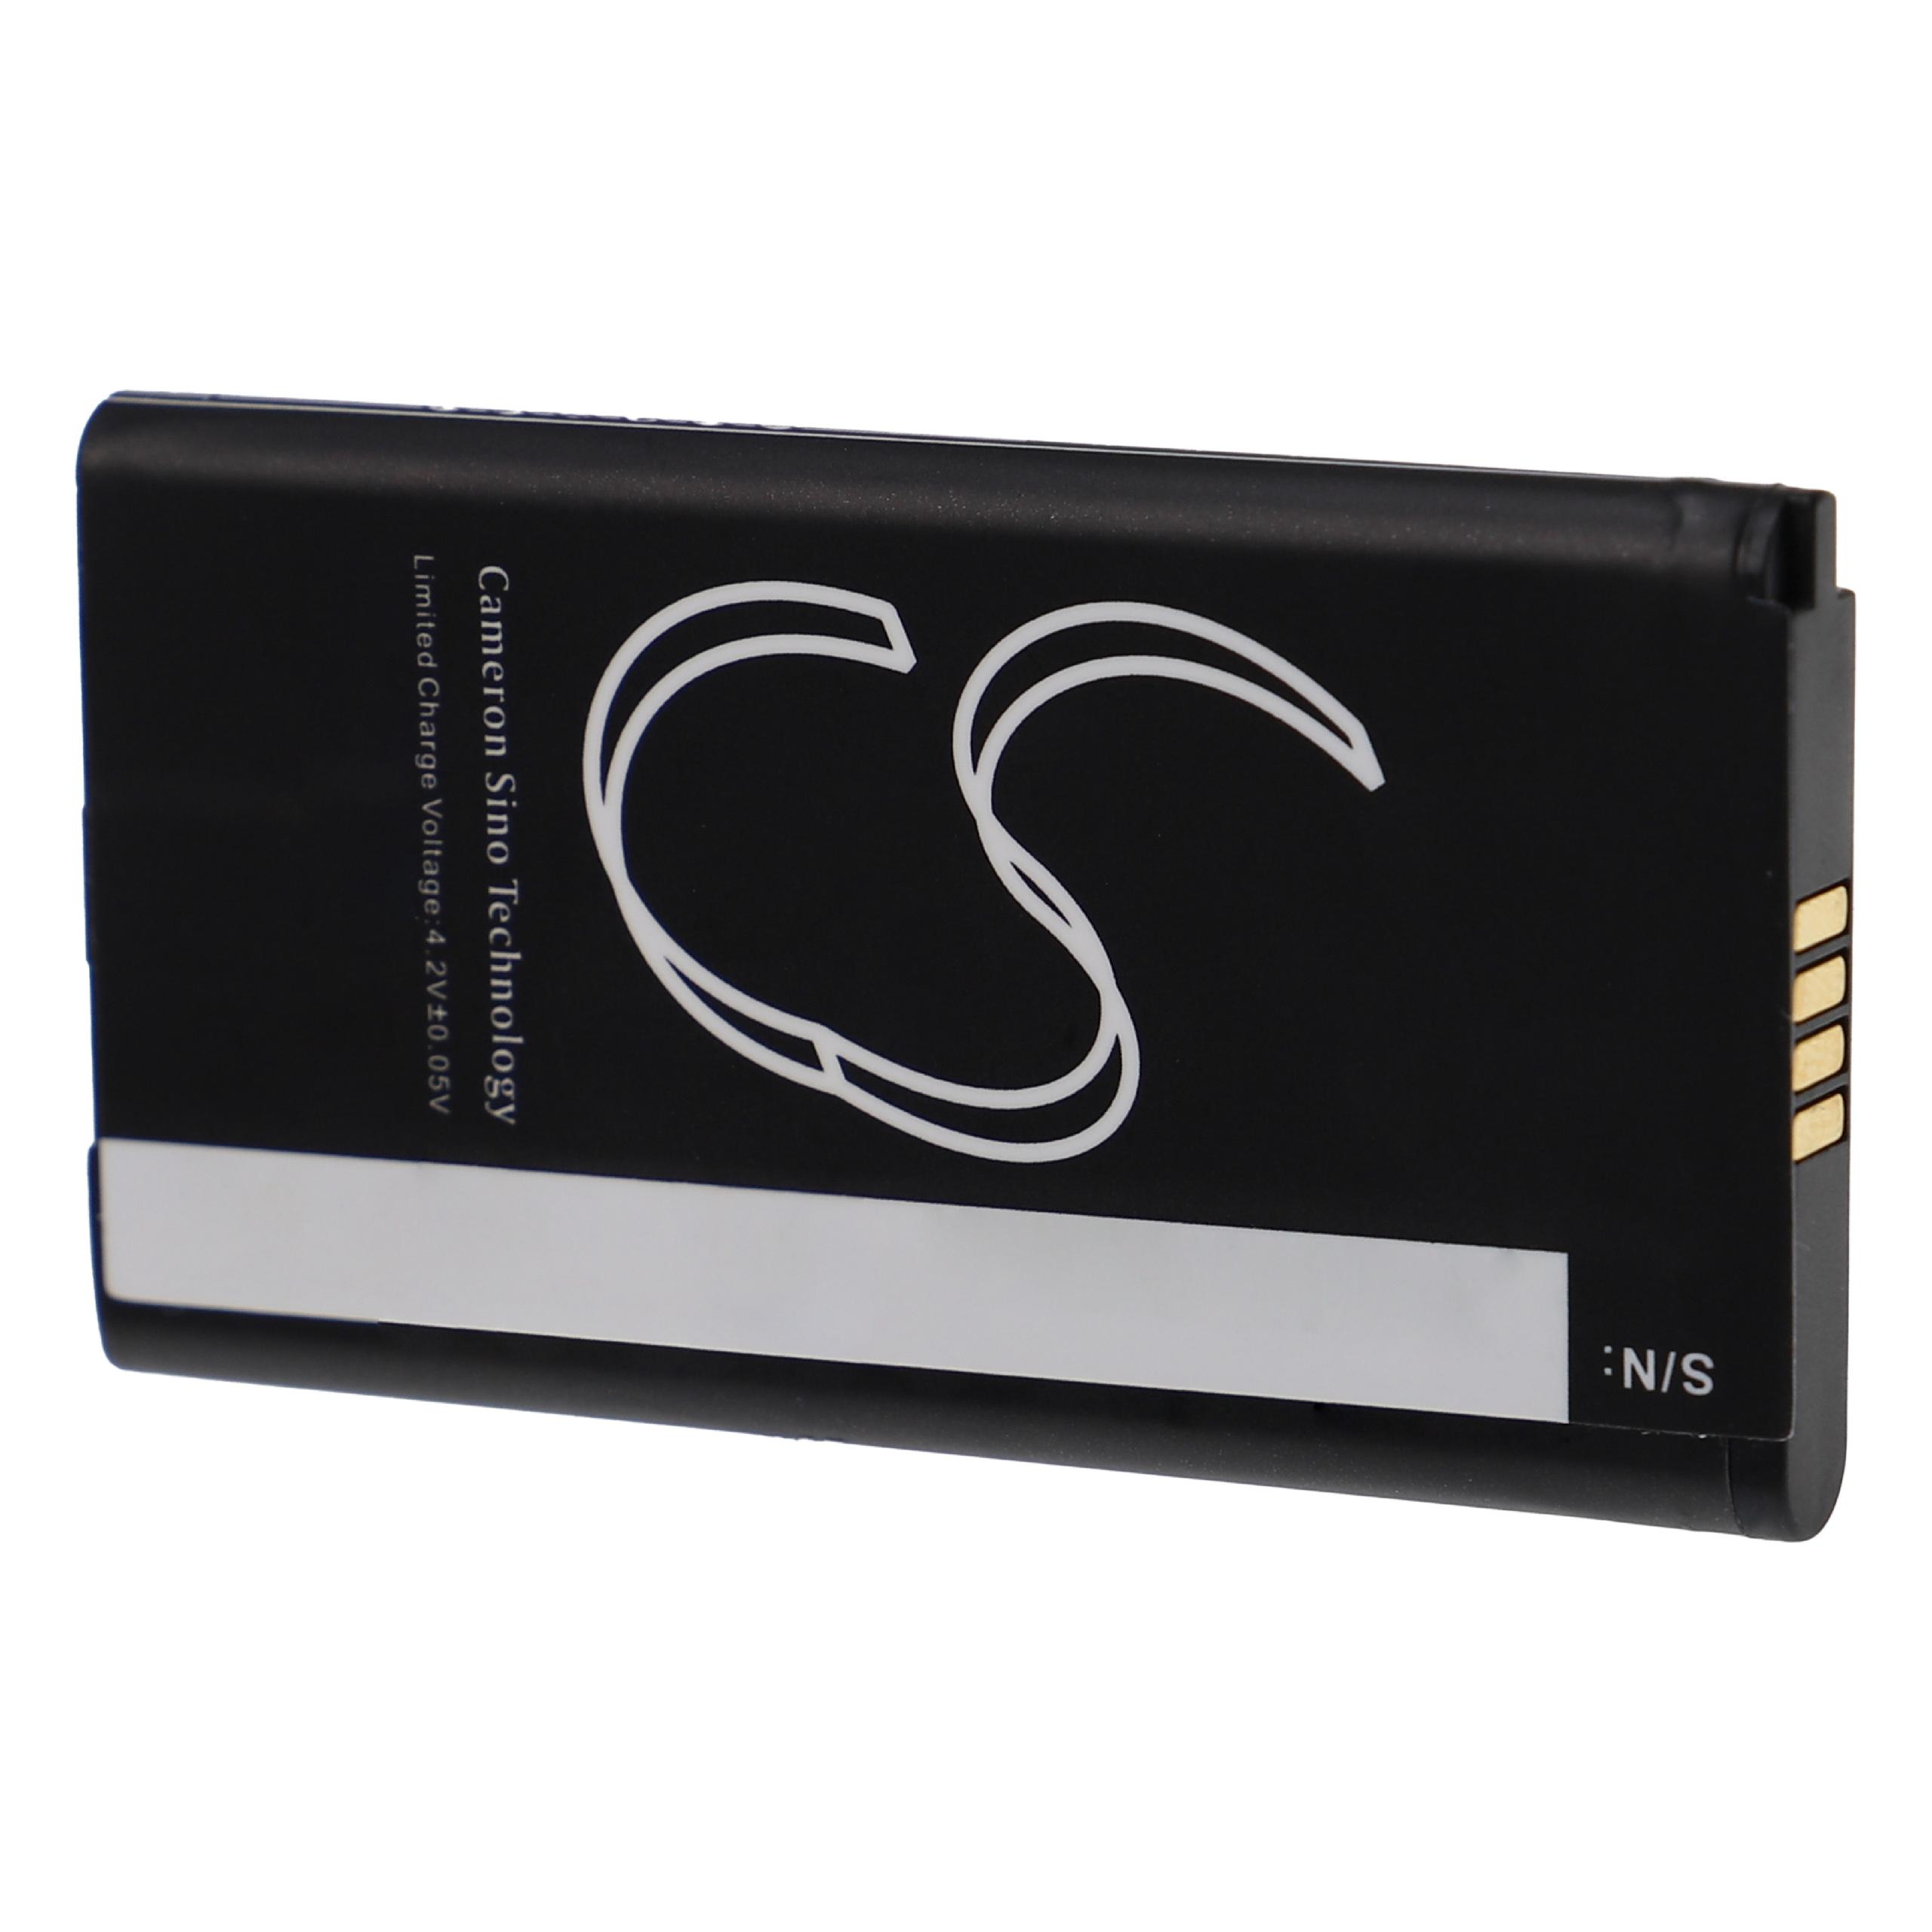 kompatibel Lautsprecher, P5 Flow 3.7 mit Volt, P5 1800 - Strap, Akku Li-Ion VHBW LG Music